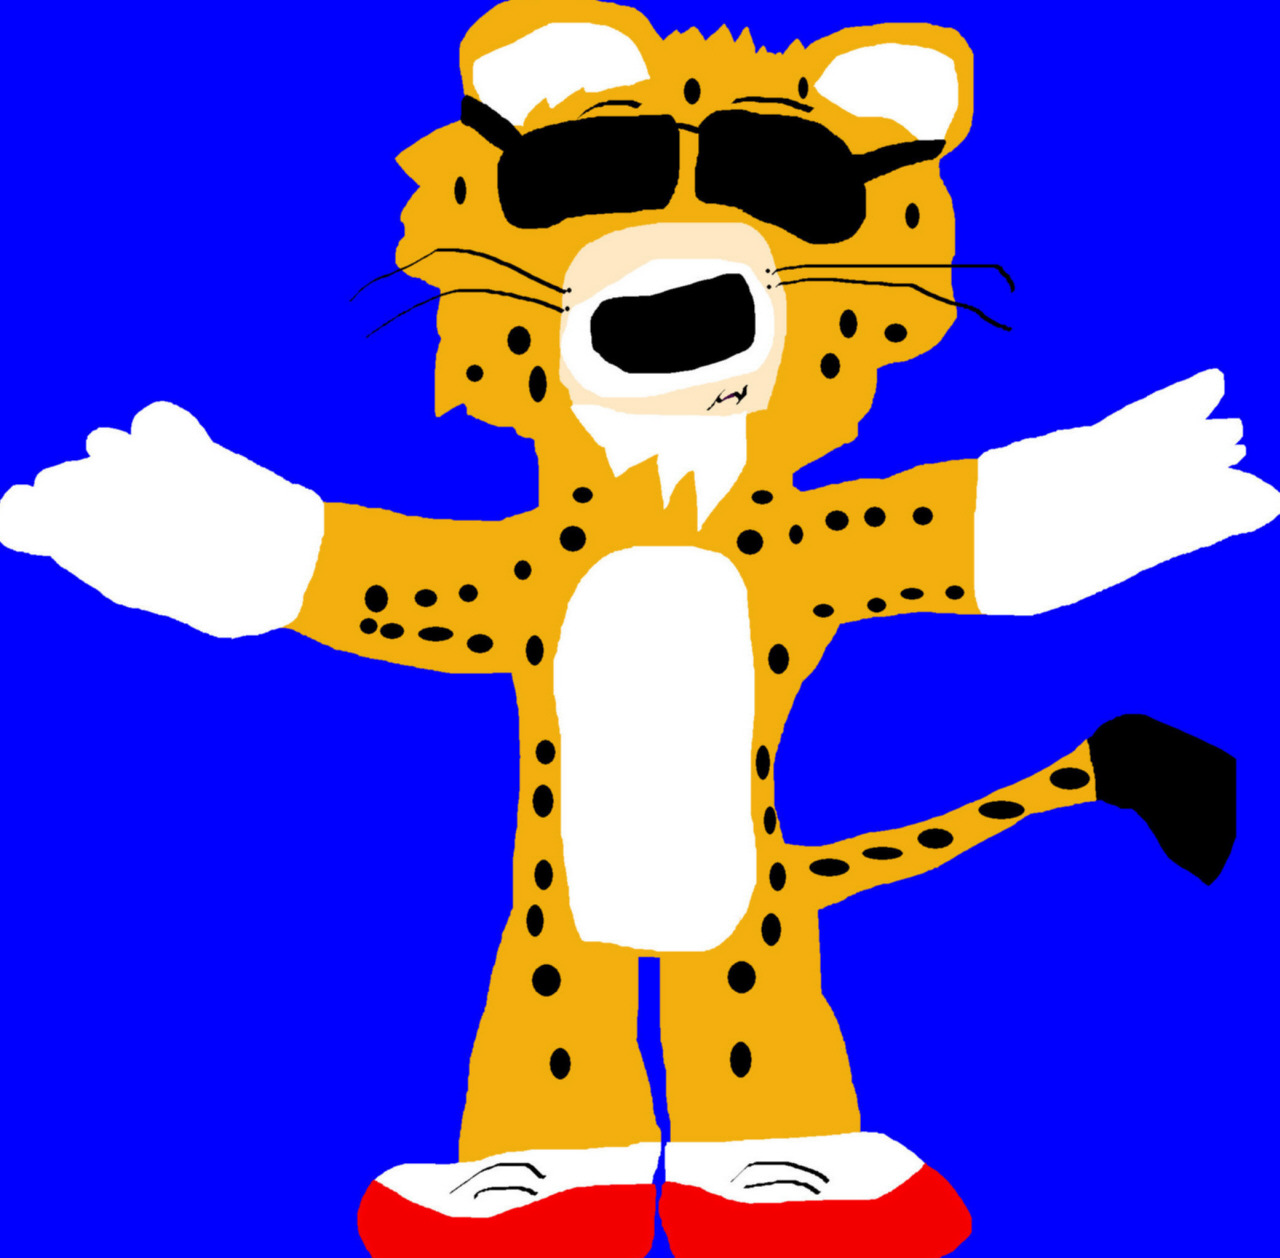 Random Semi Buff Chester Cheetah MS Paint by Falconlobo